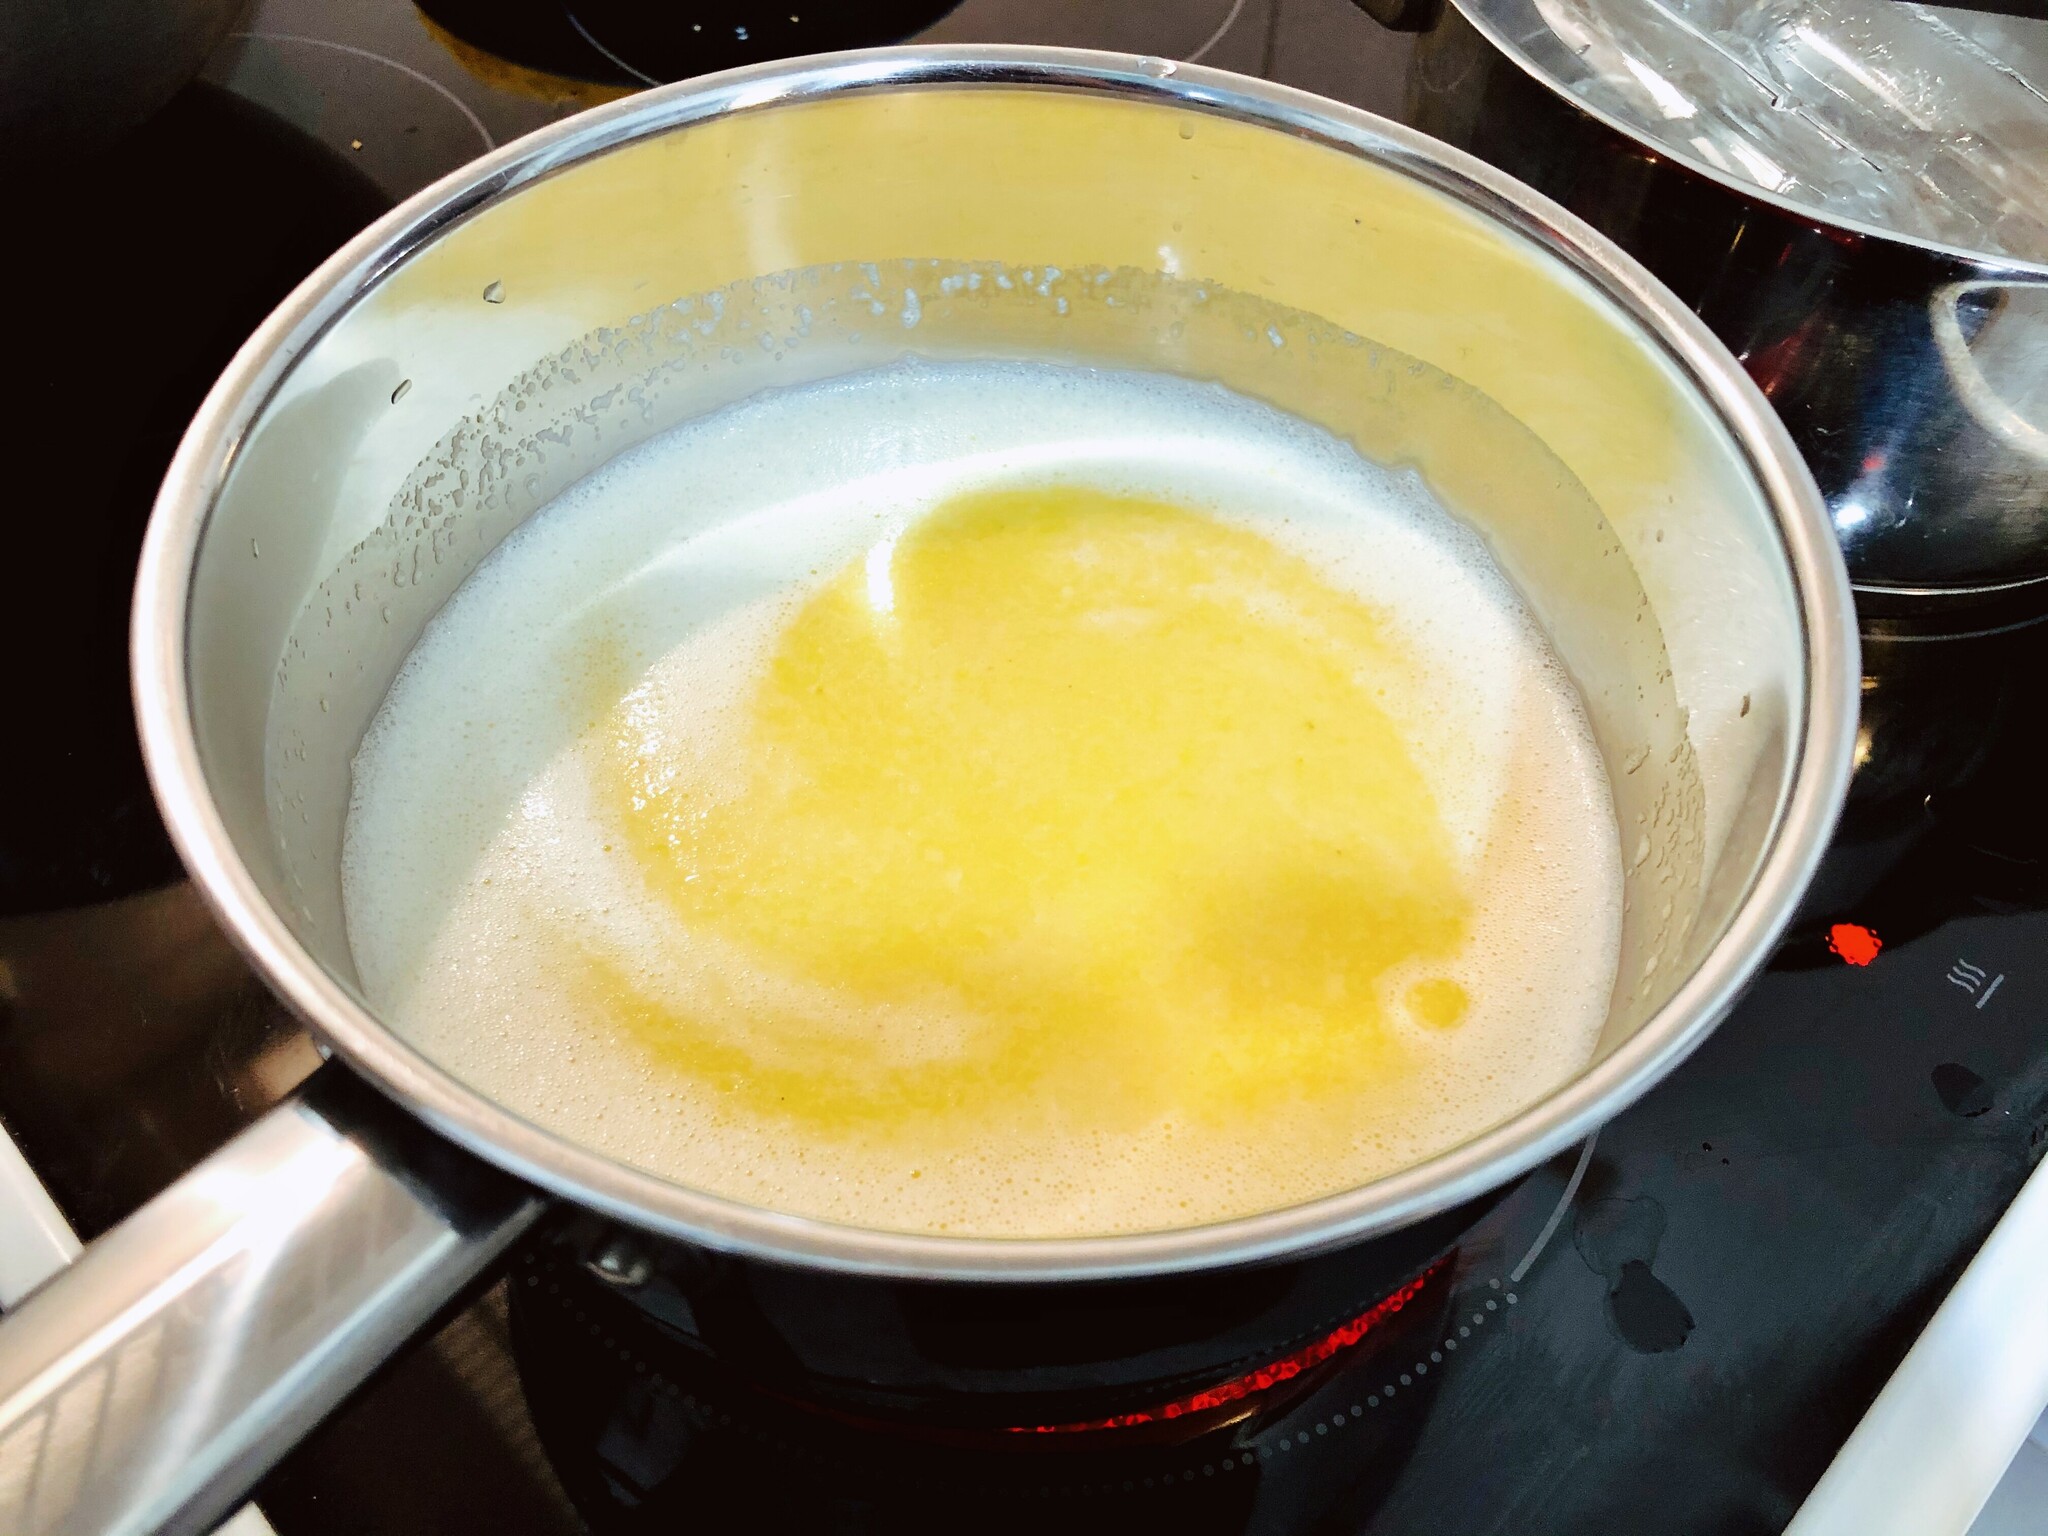 yellow sauce boiling in kettle, lemon drop